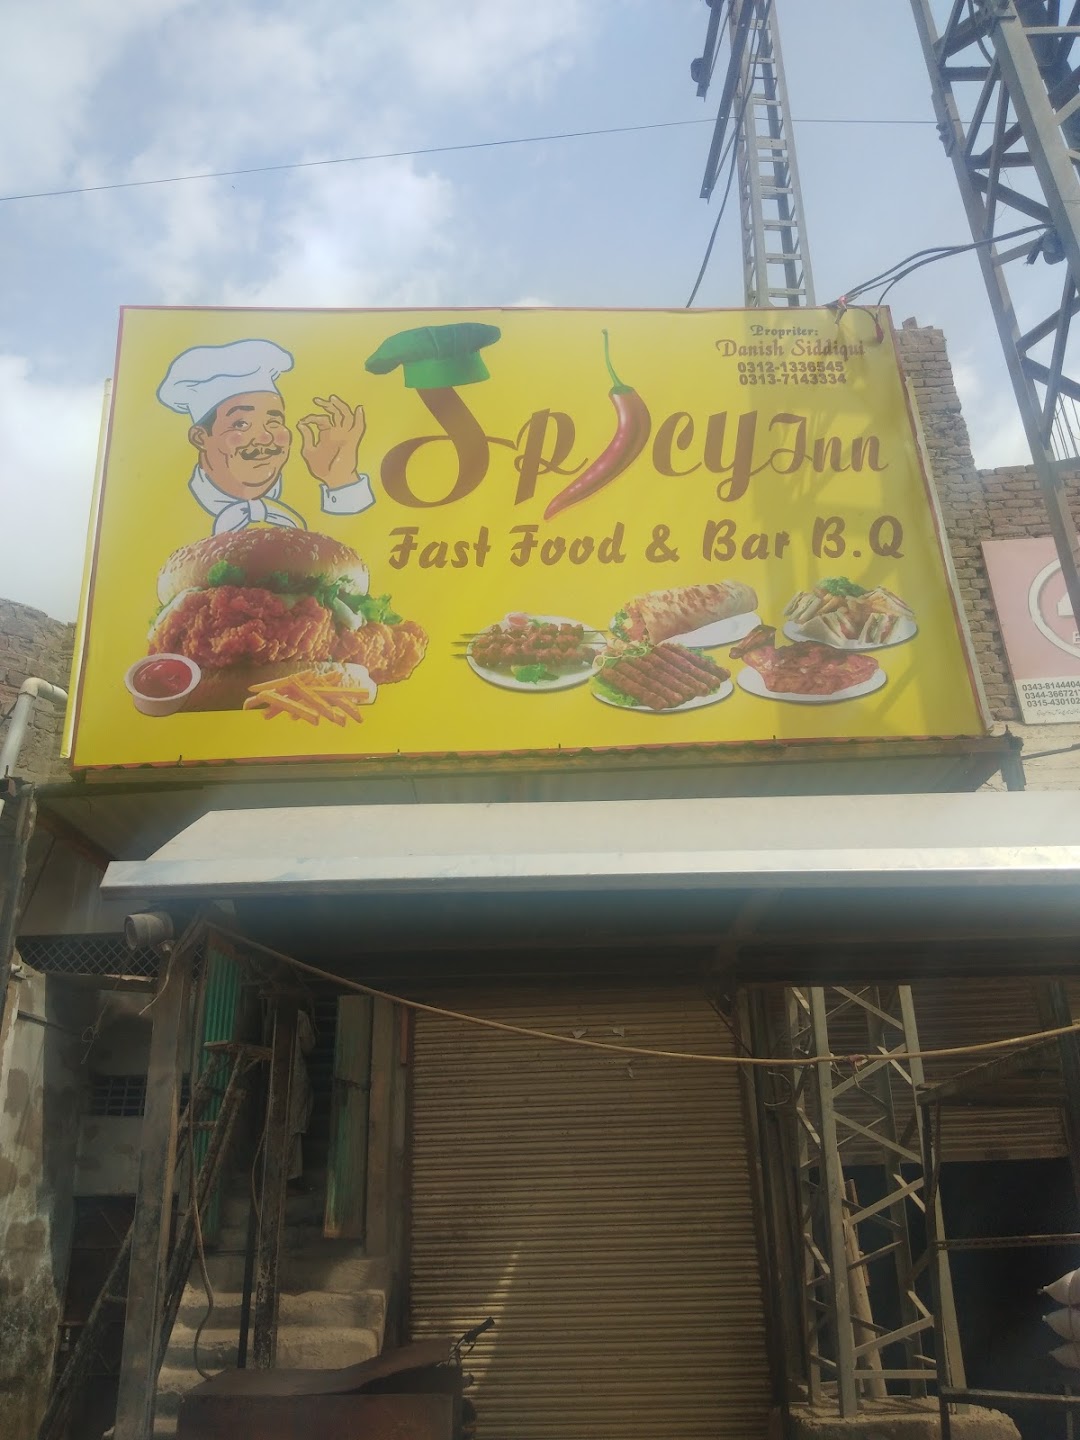 Spicy inn fast food